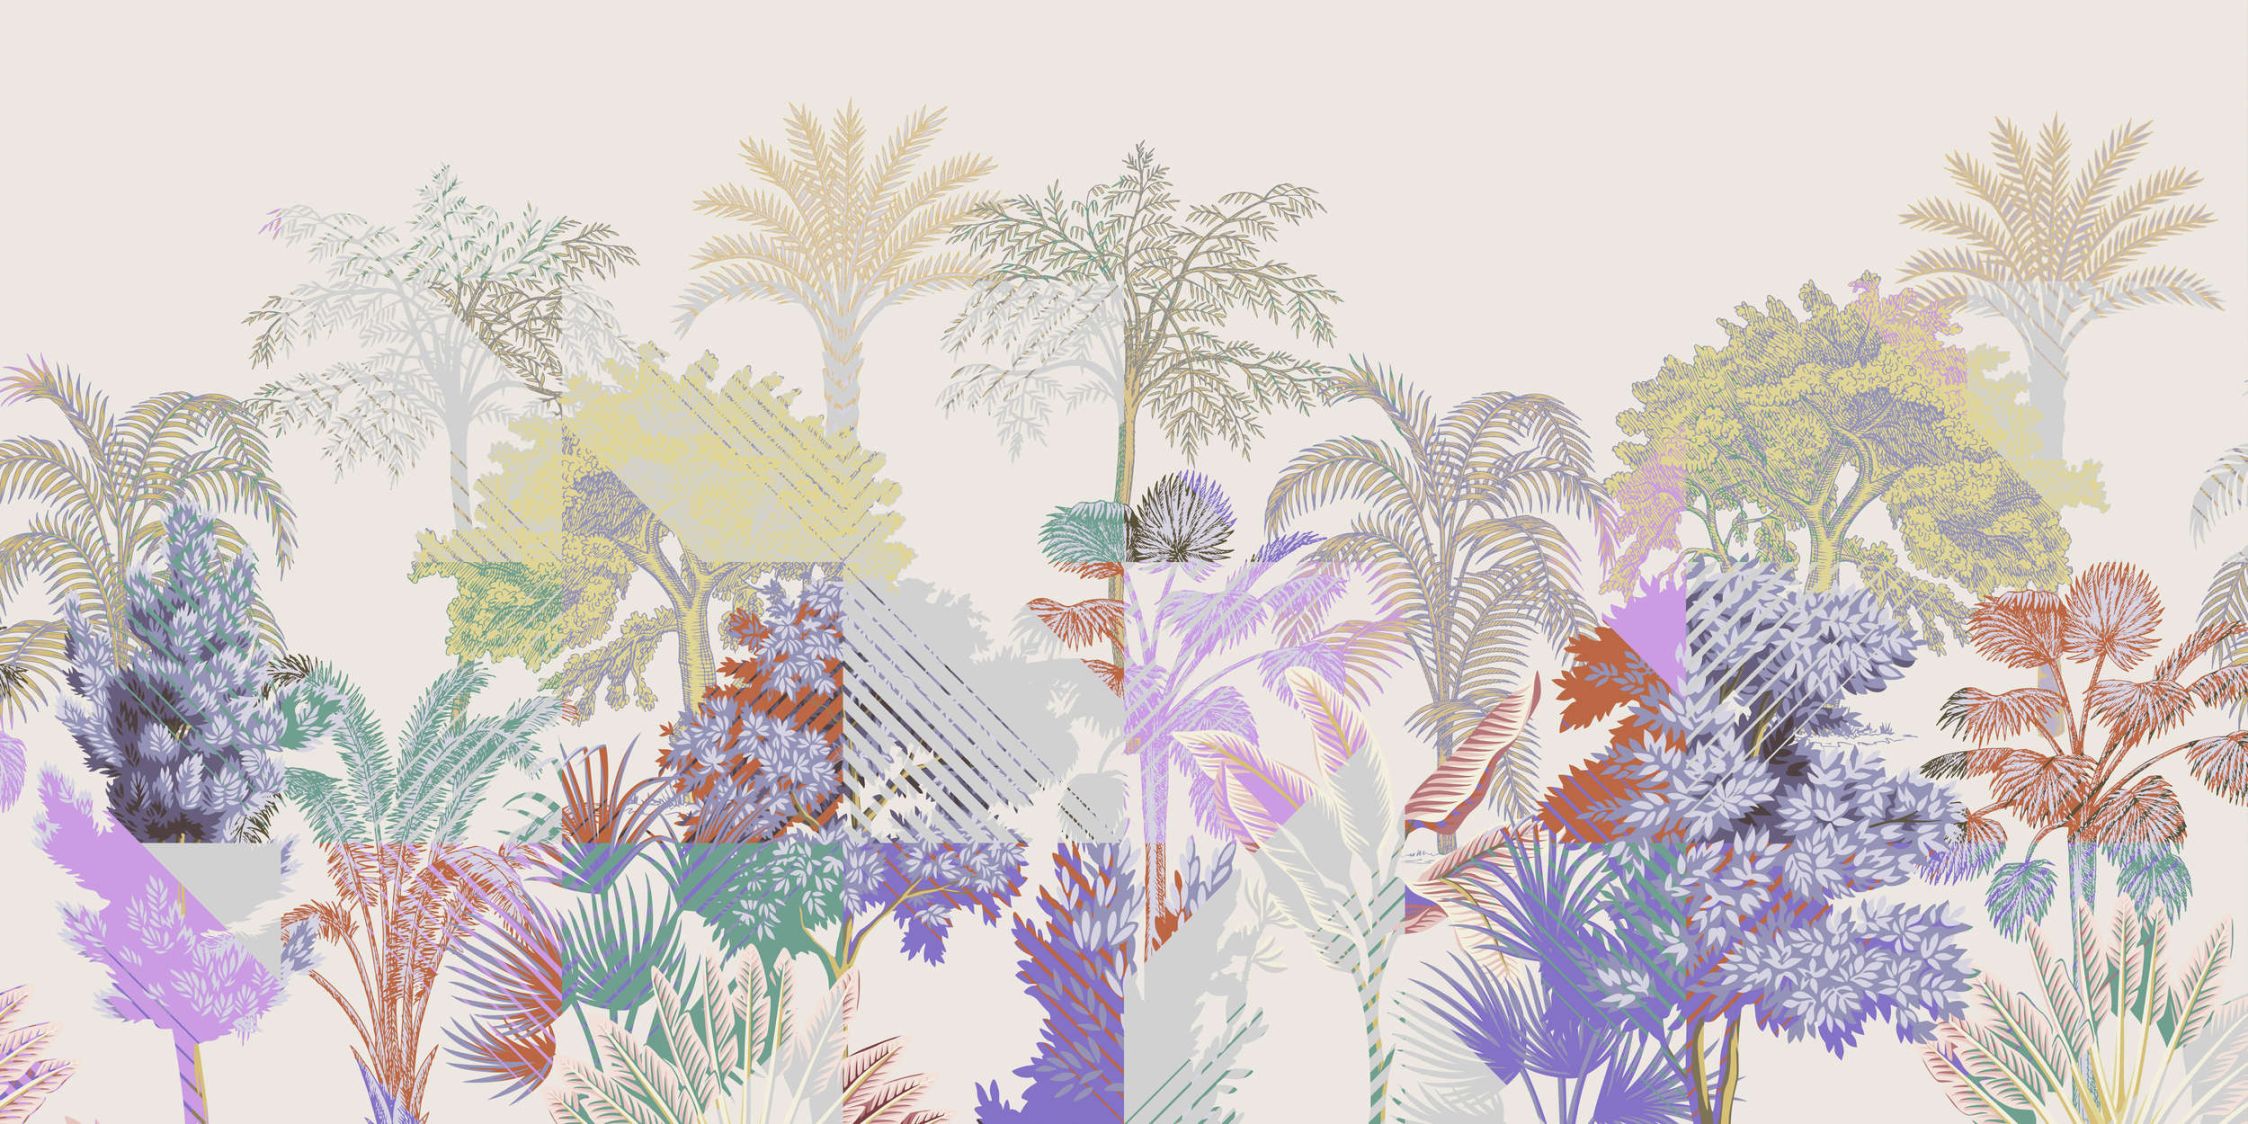             Fotomural »esplanade 2«< - patchwork de jungla con arbustos - colorido | no tejido mate, liso
        